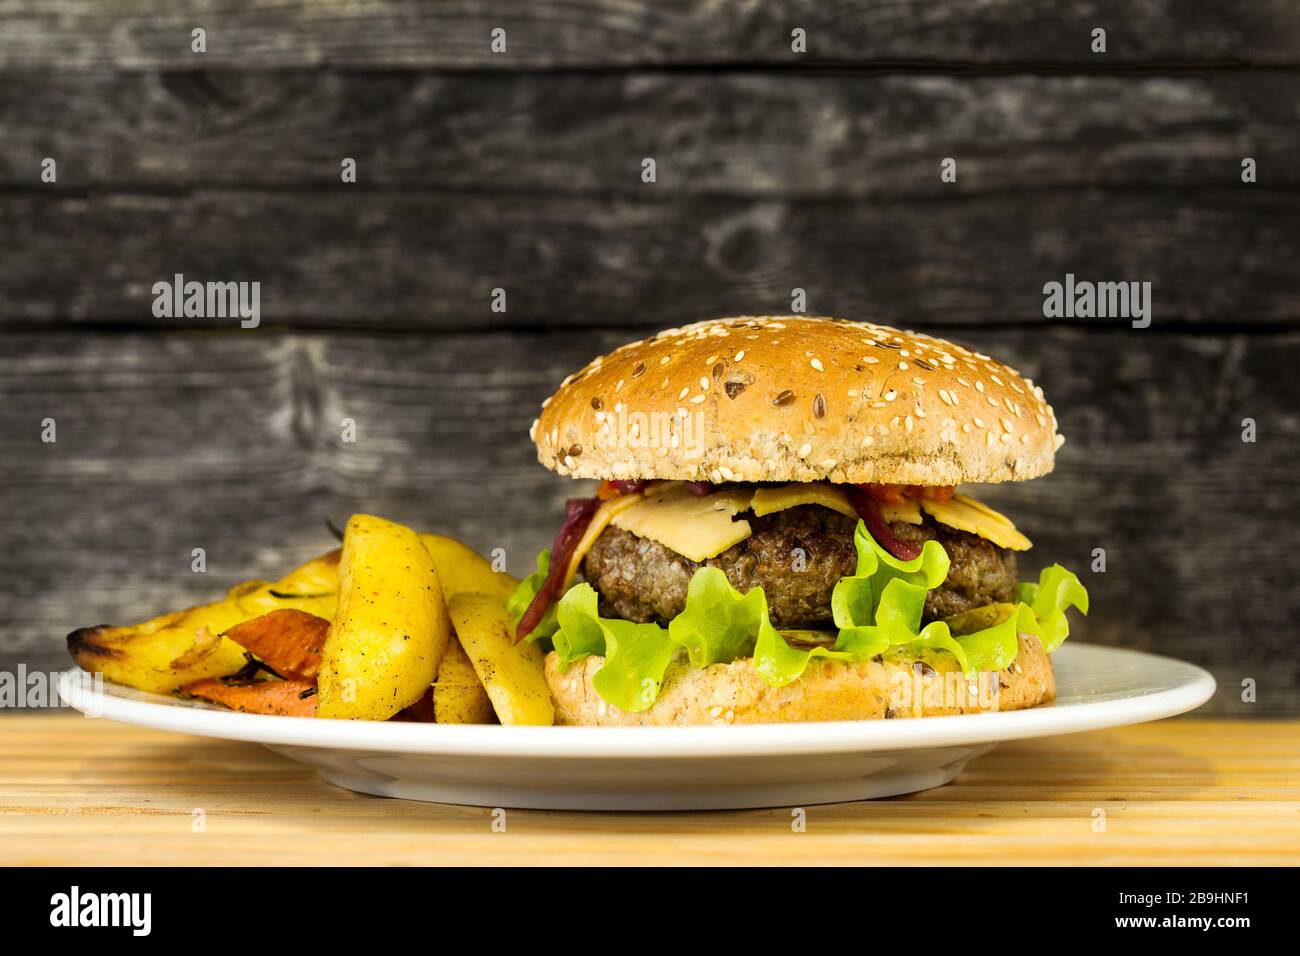 Délicieux hamburger de bœuf grillé avec des pommes de terre sur une plaque sur fond rustique en bois Banque D'Images